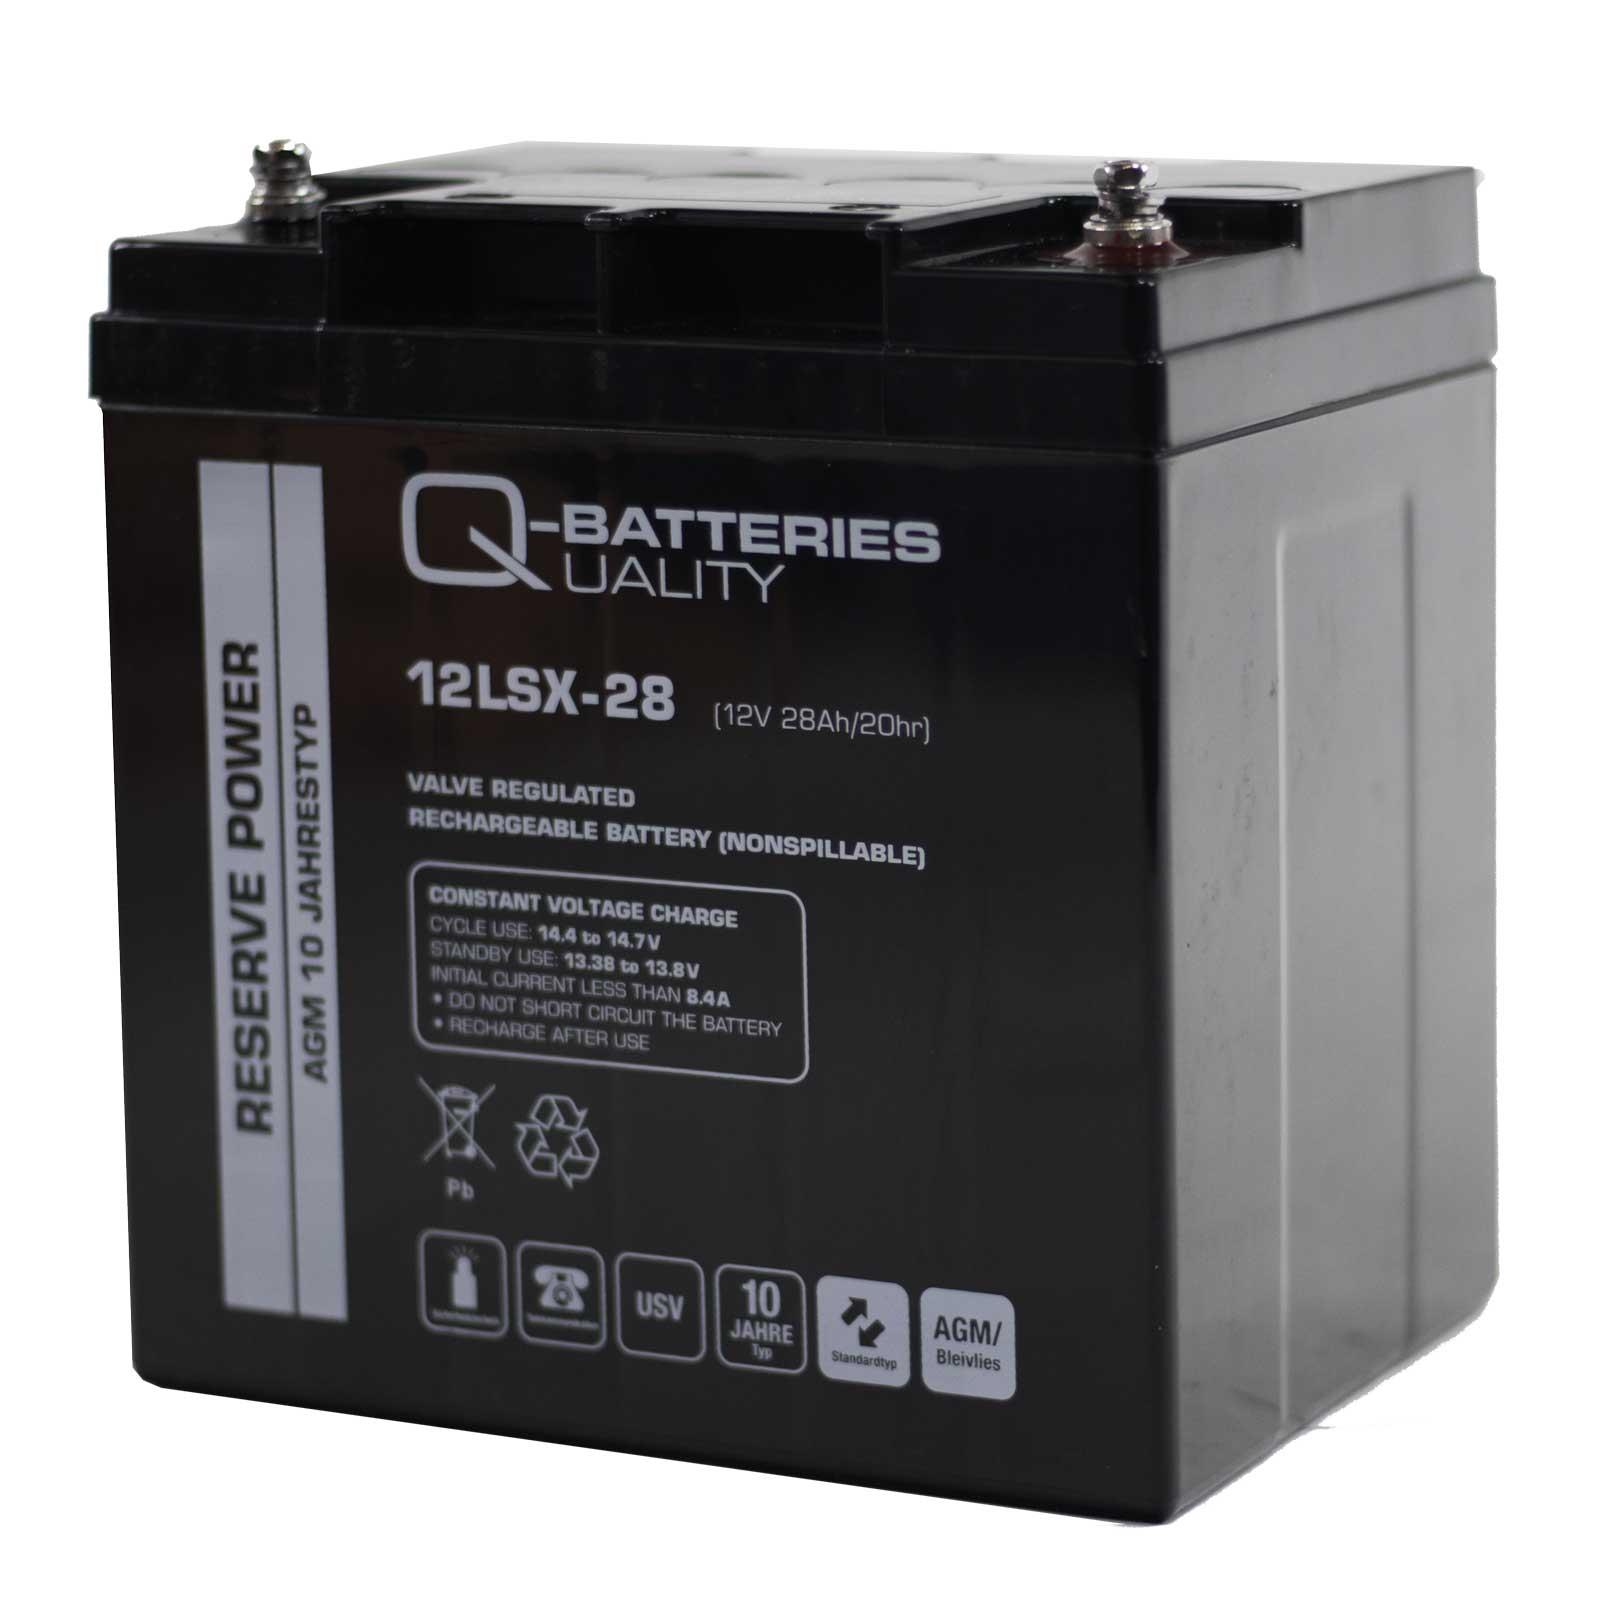 Q-Batteries 216V Zentralbatterieanlage für Sicherheitsbeleuchtung inkl. Zubehör